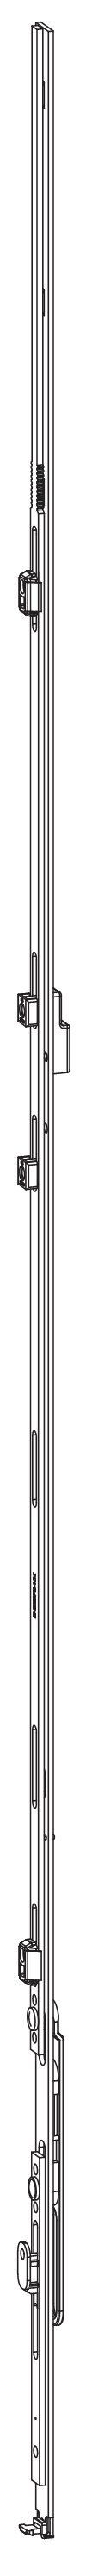 GU-ITALIA -  Catenaccio UNI-JET asta a leva altezza maniglia fissa per seconda anta - gr / dim. 516 - alt. man. LEVA ZH - lbb/hbb 2101 - 2350